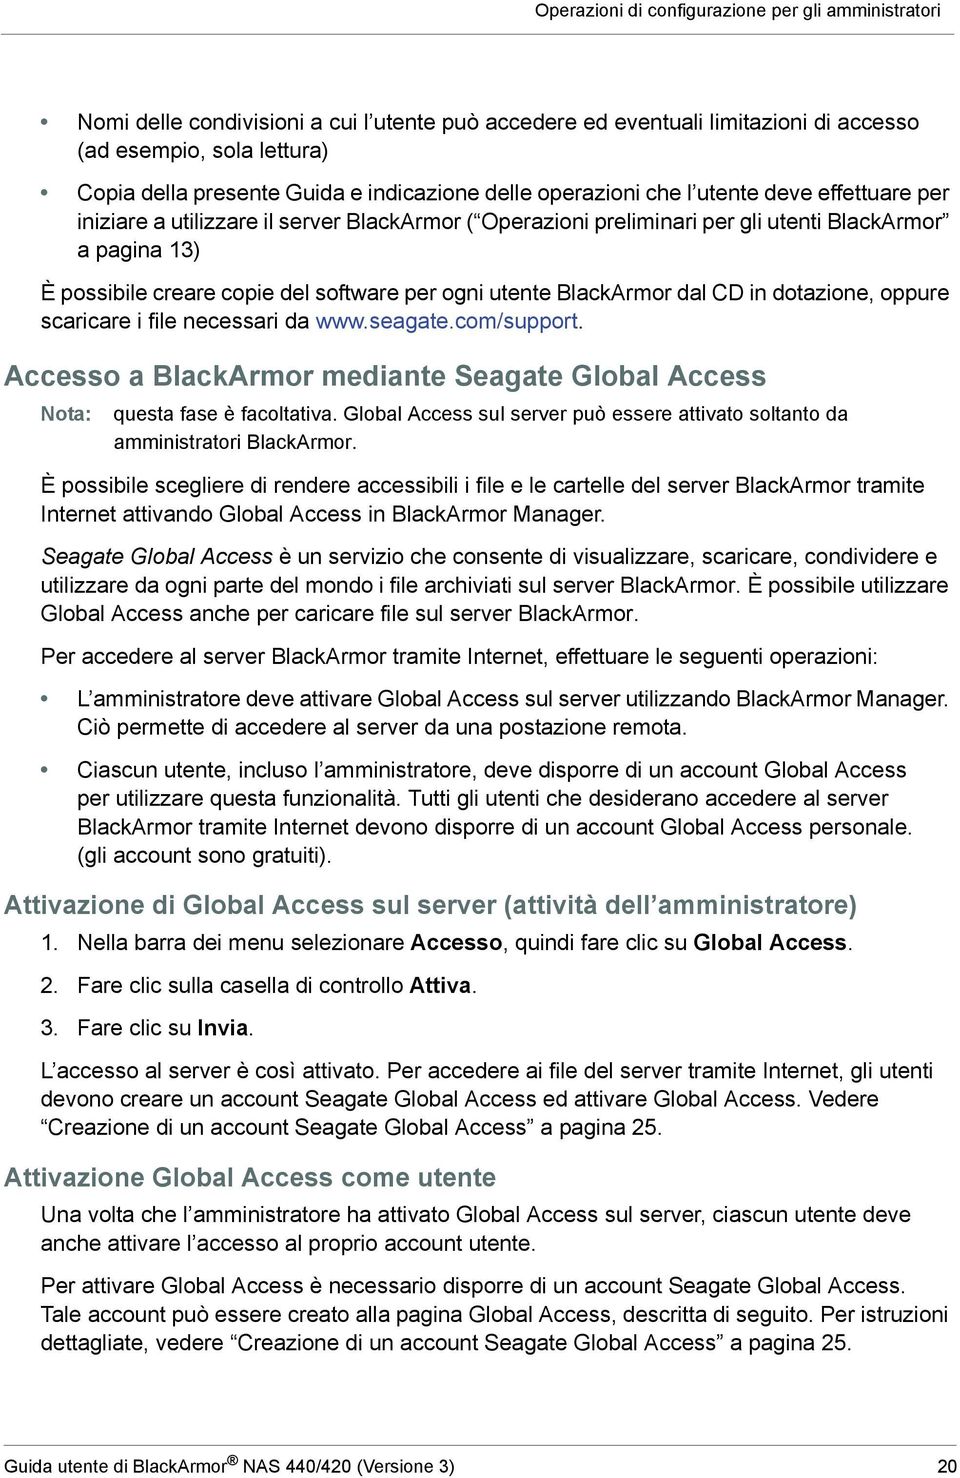 software per ogni utente BlackArmor dal CD in dotazione, oppure scaricare i file necessari da www.seagate.com/support.